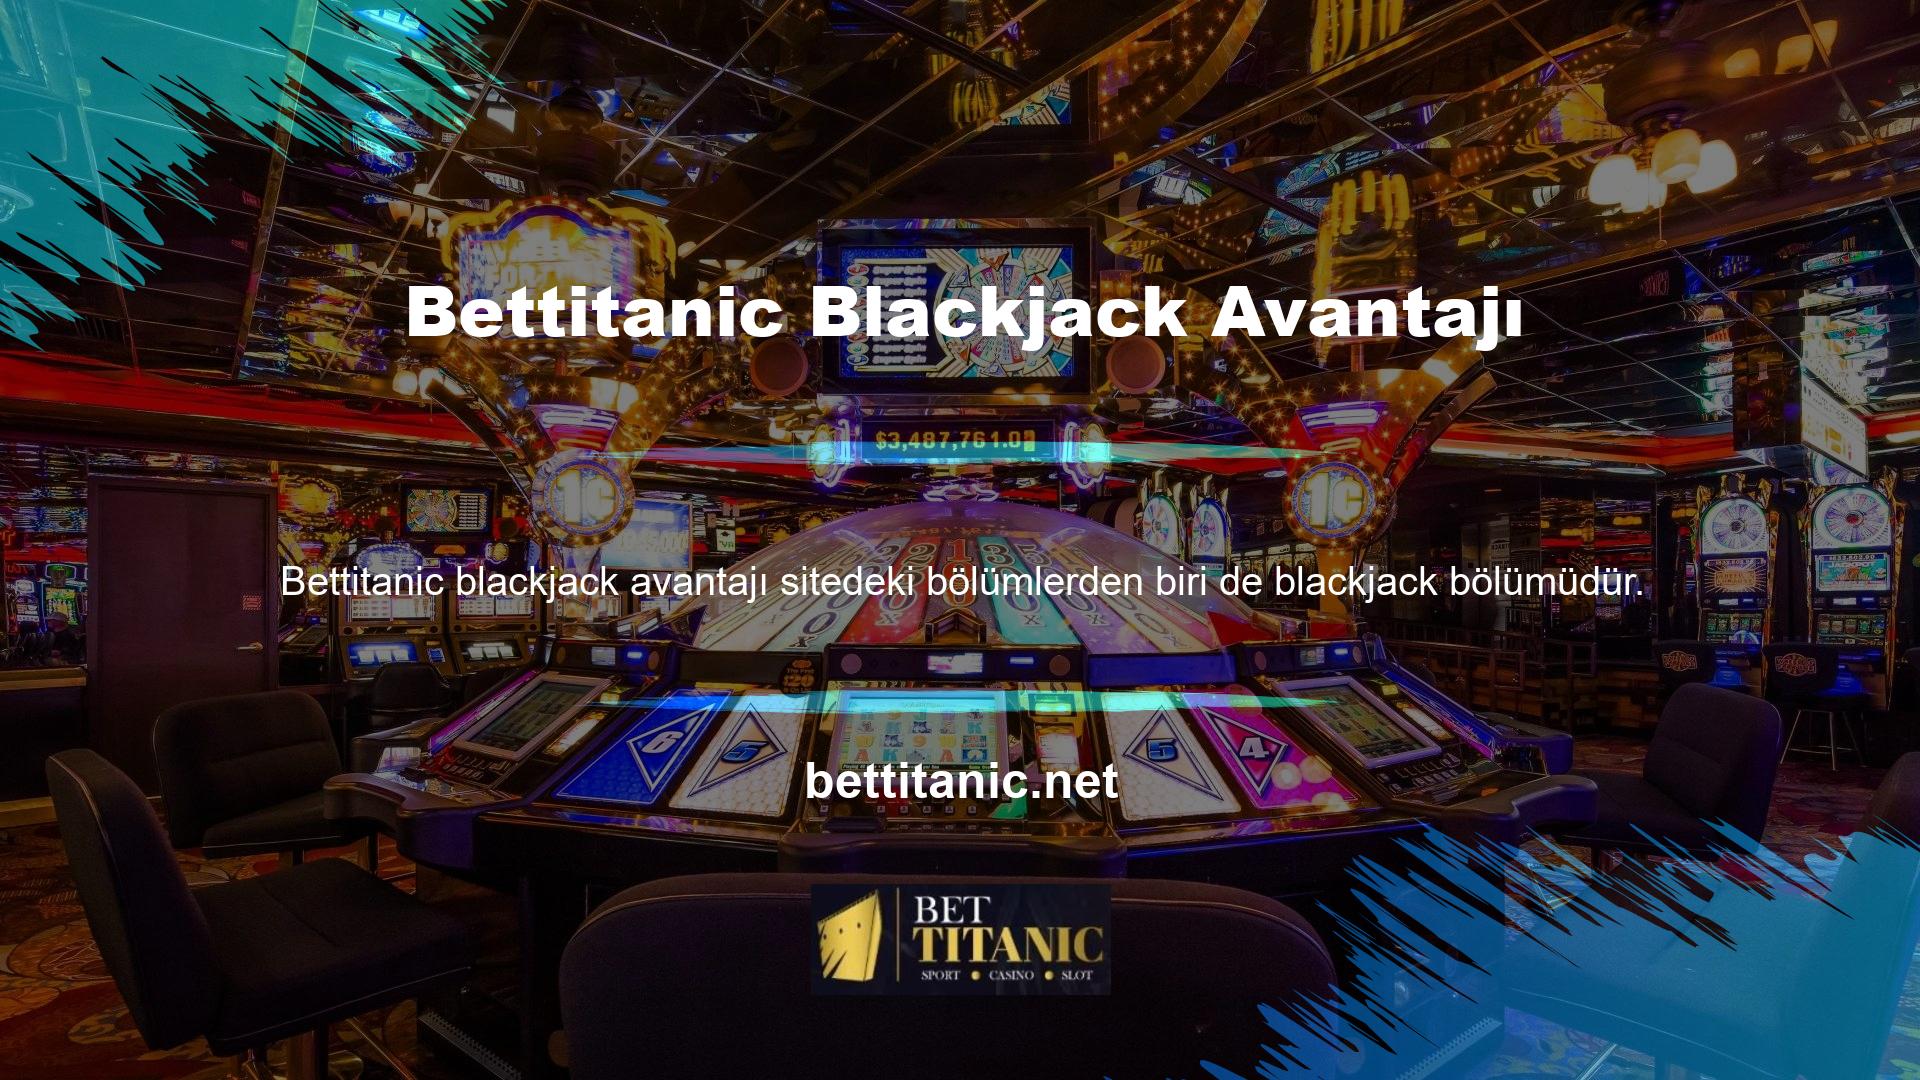 Blackjack'in avantajlarını keşfetmek istiyorsanız, görebileceğiniz ilk avantaj, sitenin blackjack bölümünün altyapısının durumudur